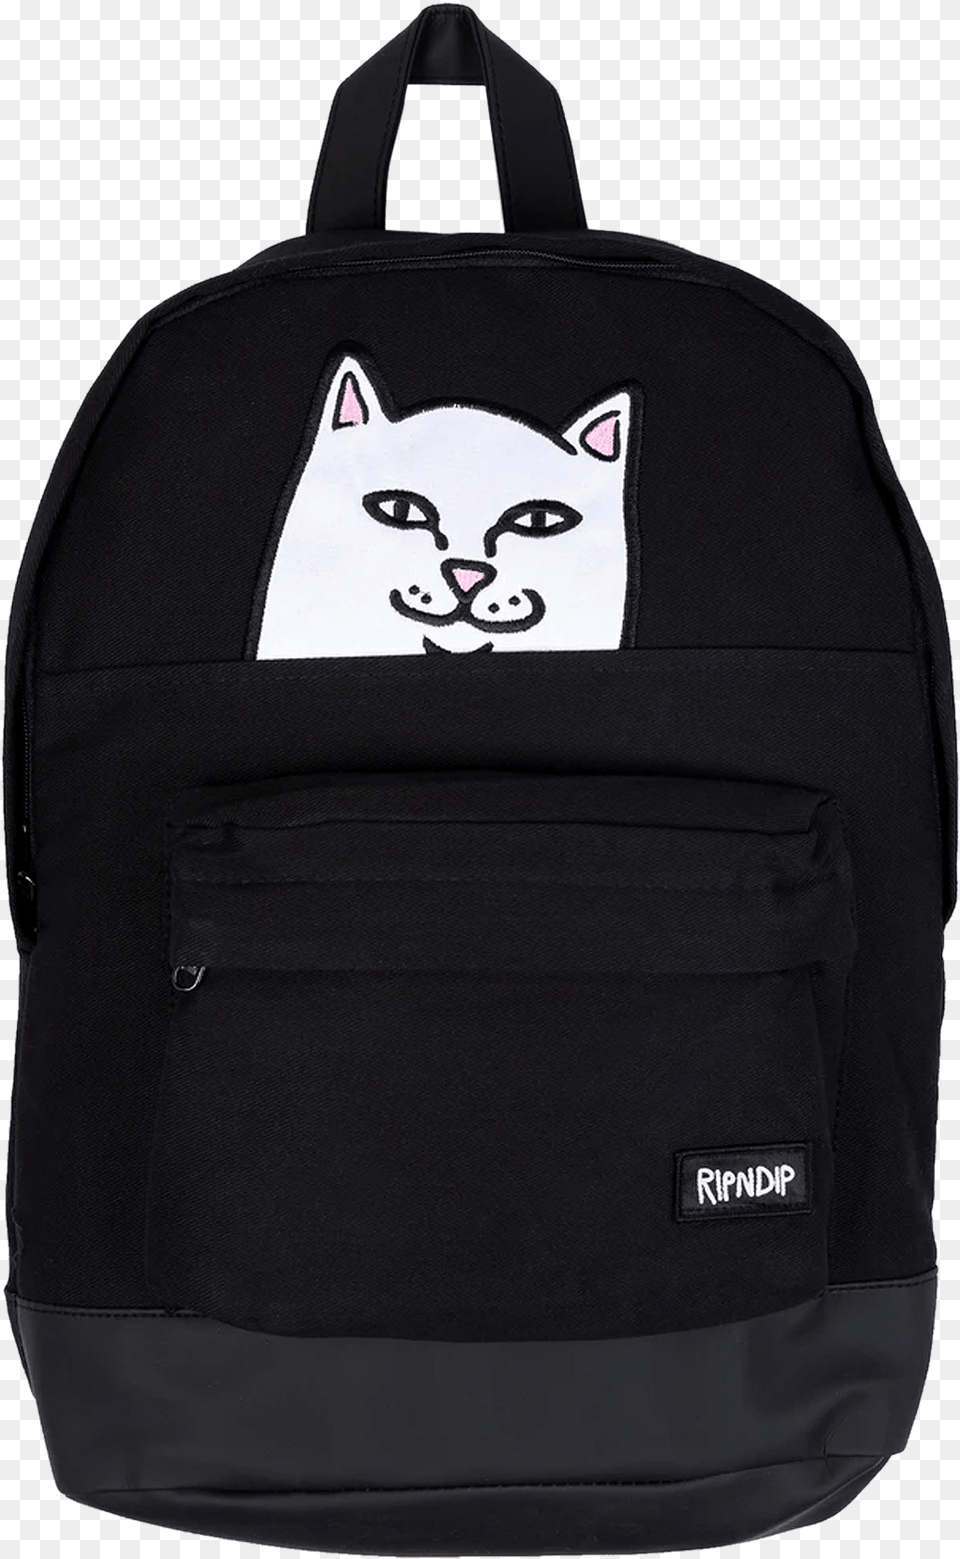 Ripndip Backpack Black, Bag, Animal, Cat, Mammal Png Image